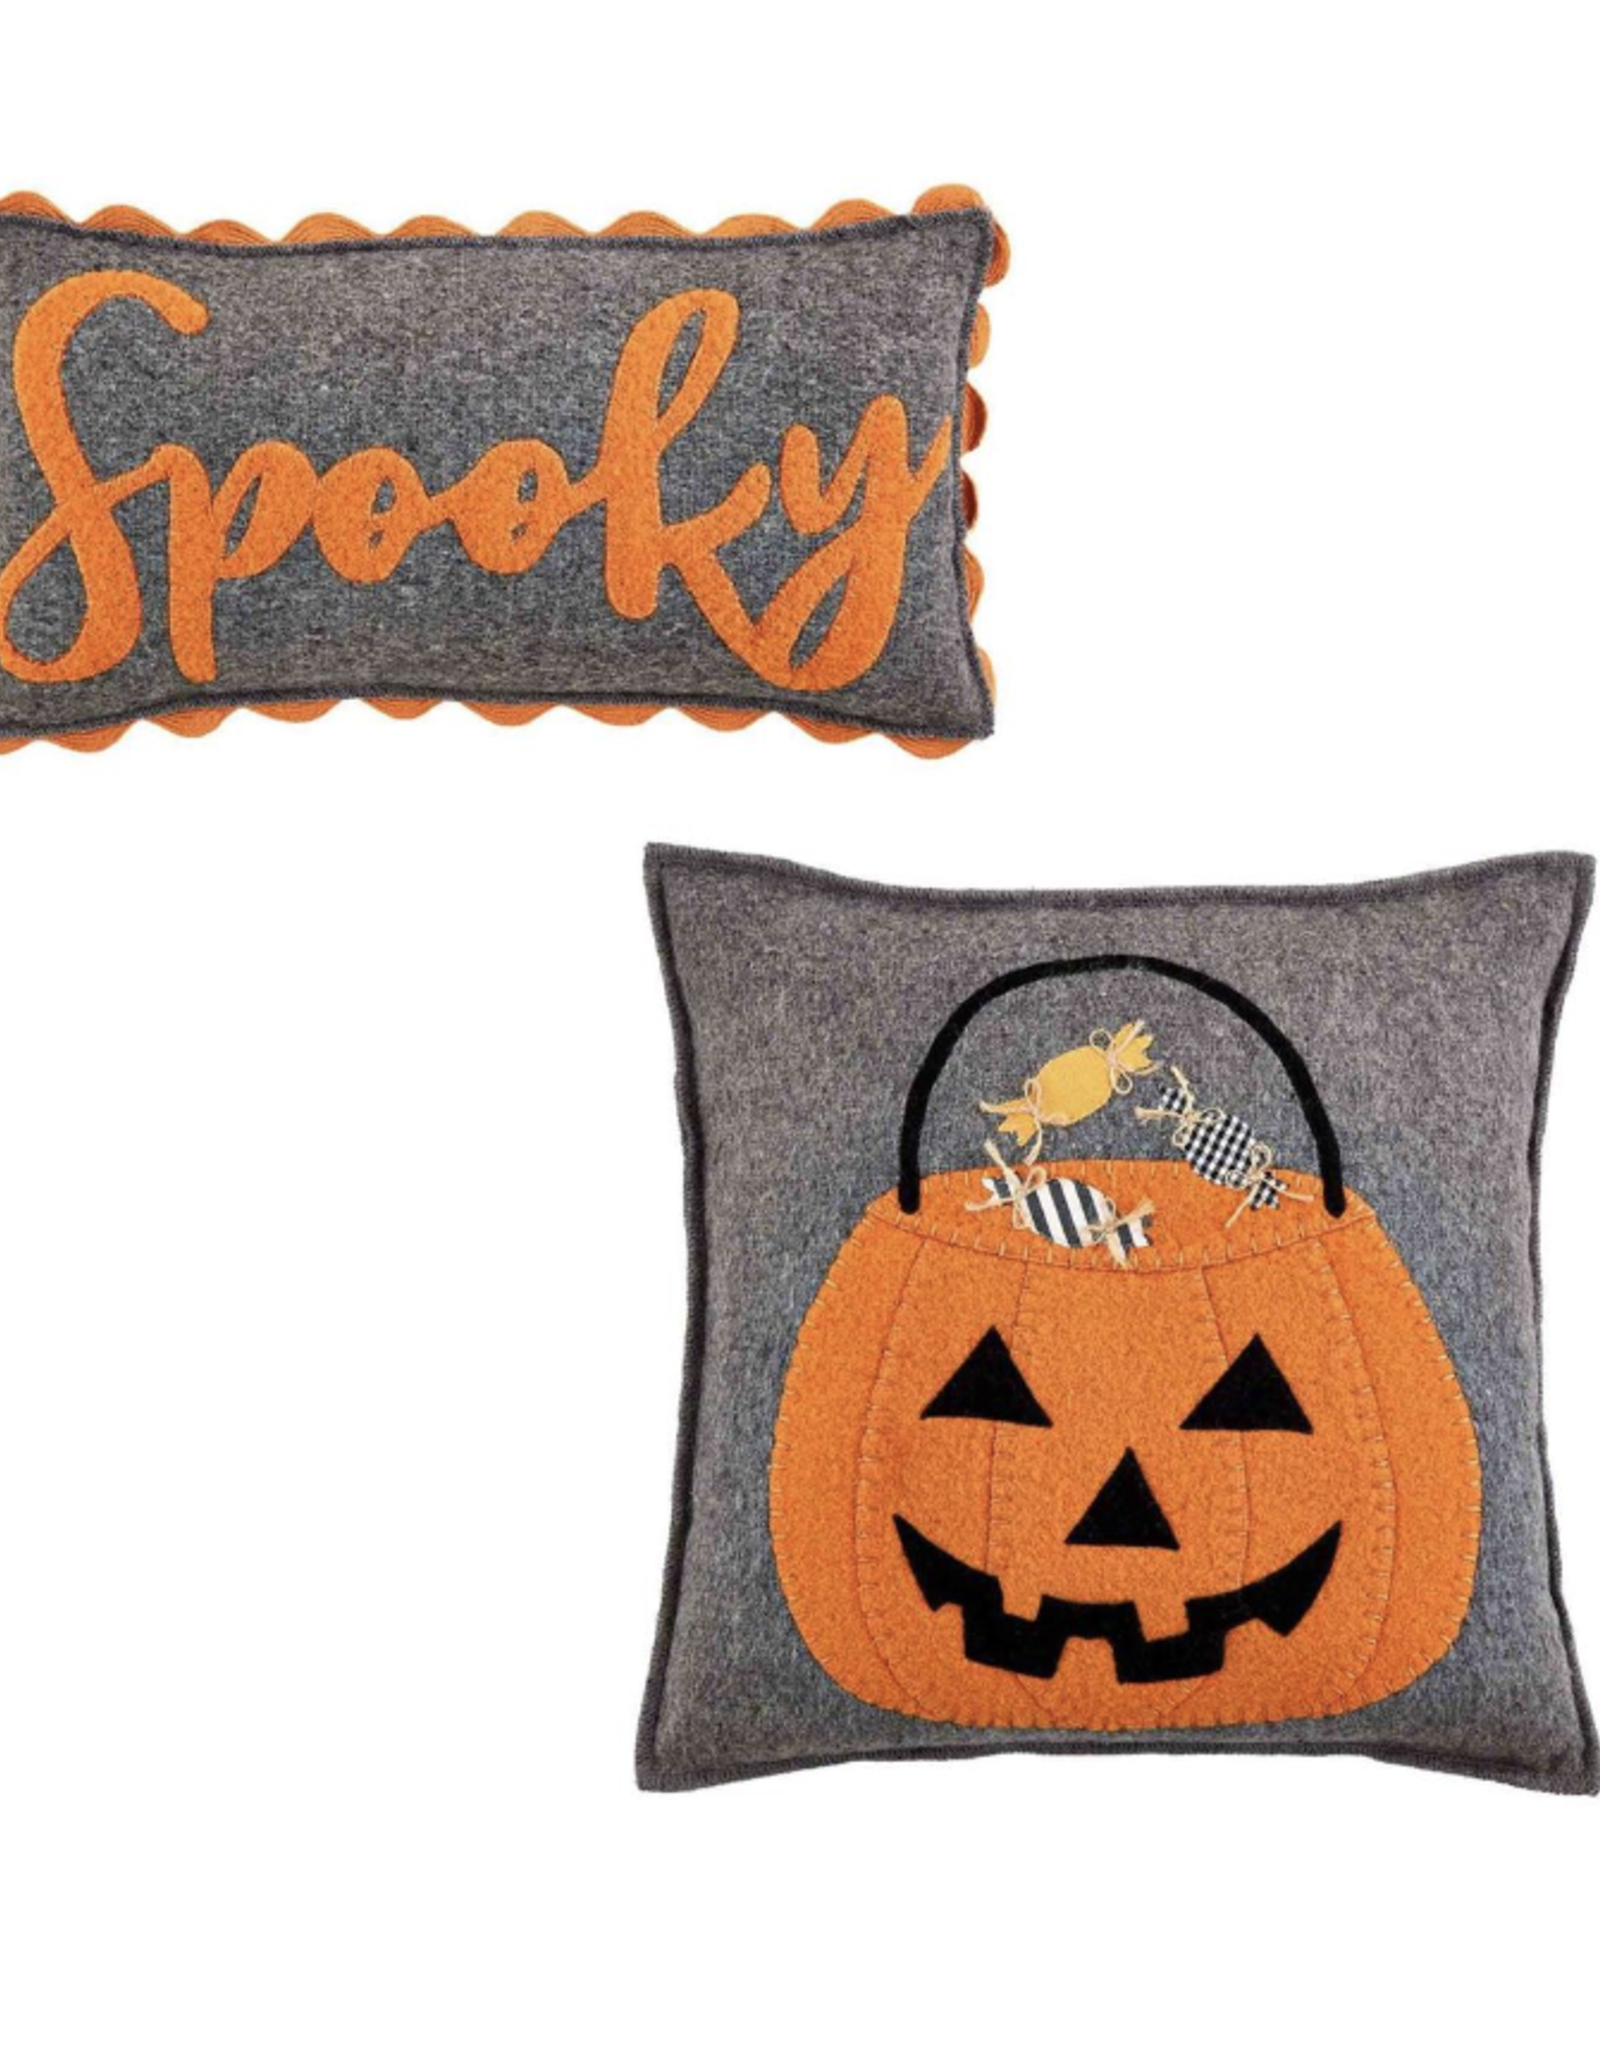 Spooky Felt Pillow